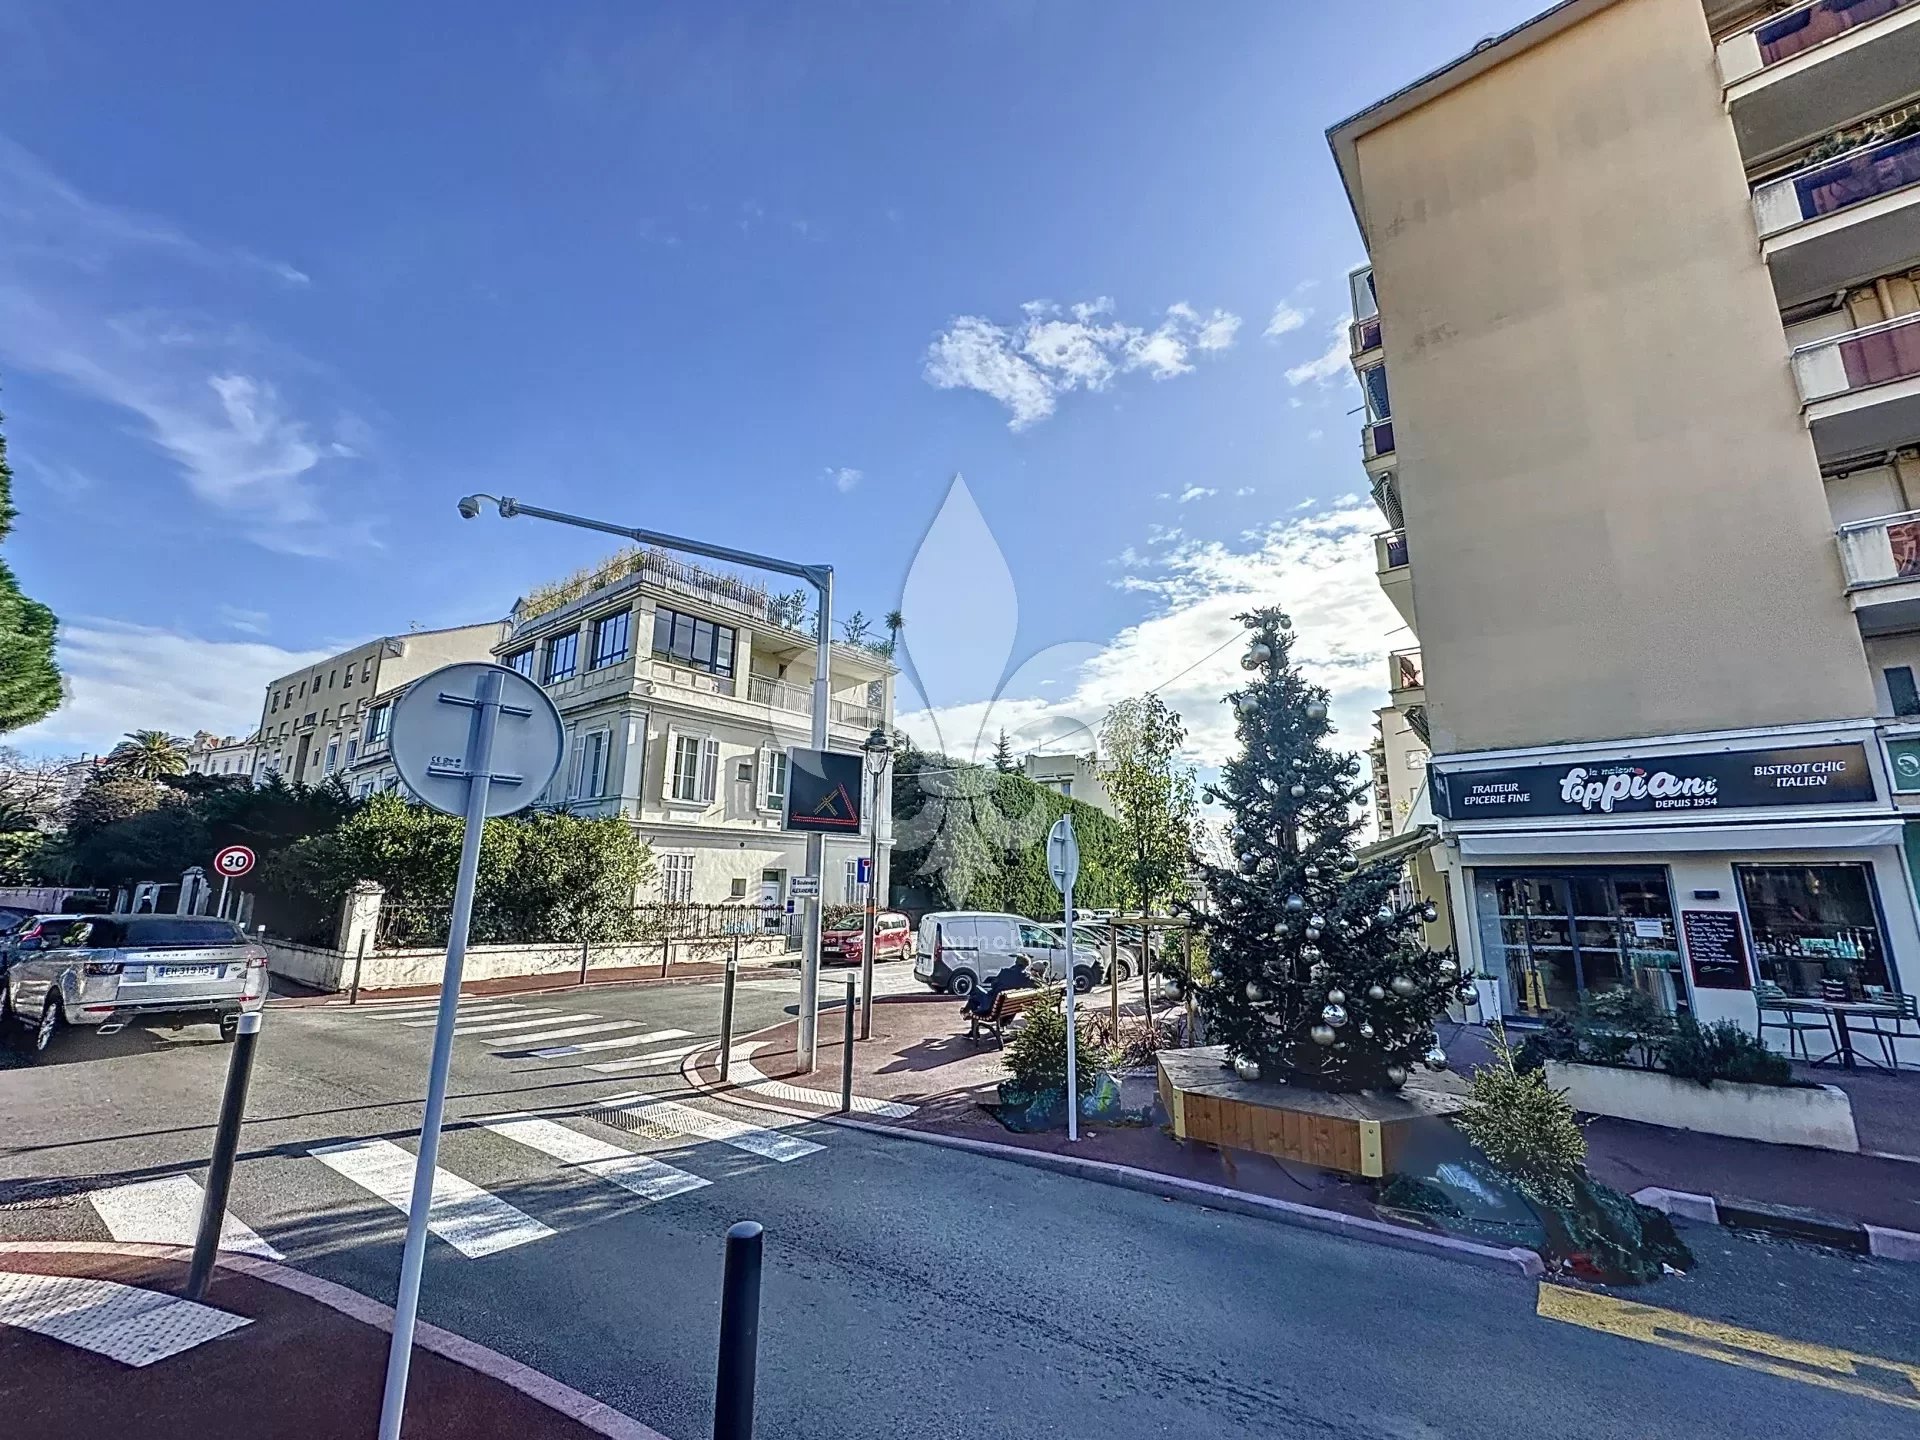 Cannes - Alexandre III : Bel appartement 3 pièces en rez-de-jardin